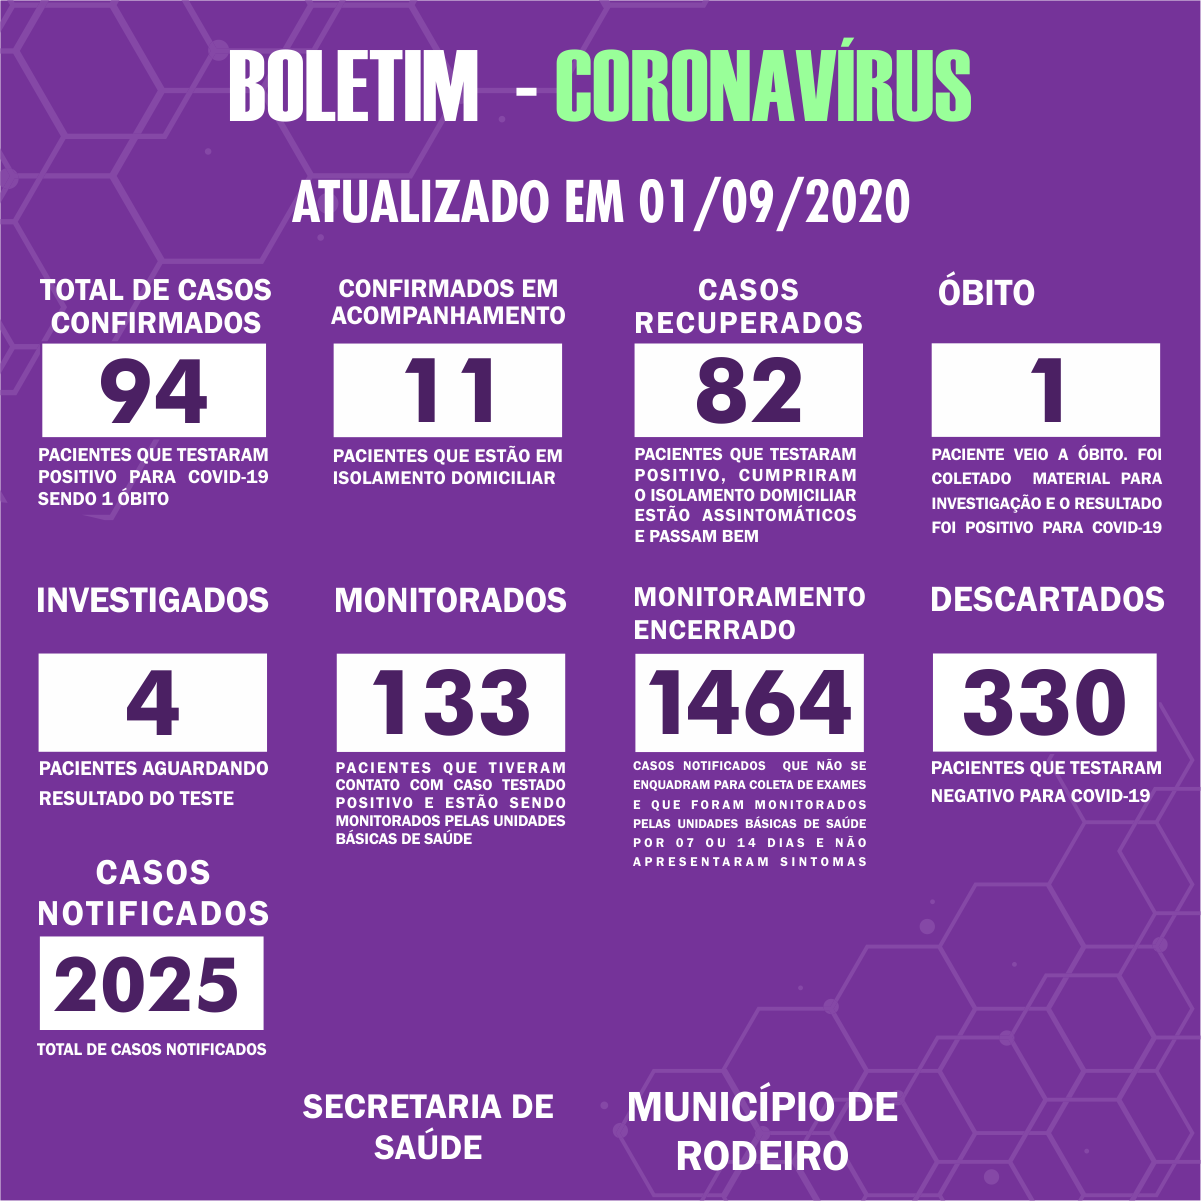 Boletim Epidemiológico do Município de Rodeiro sobre coronavírus, atualizado em 01/09/2020